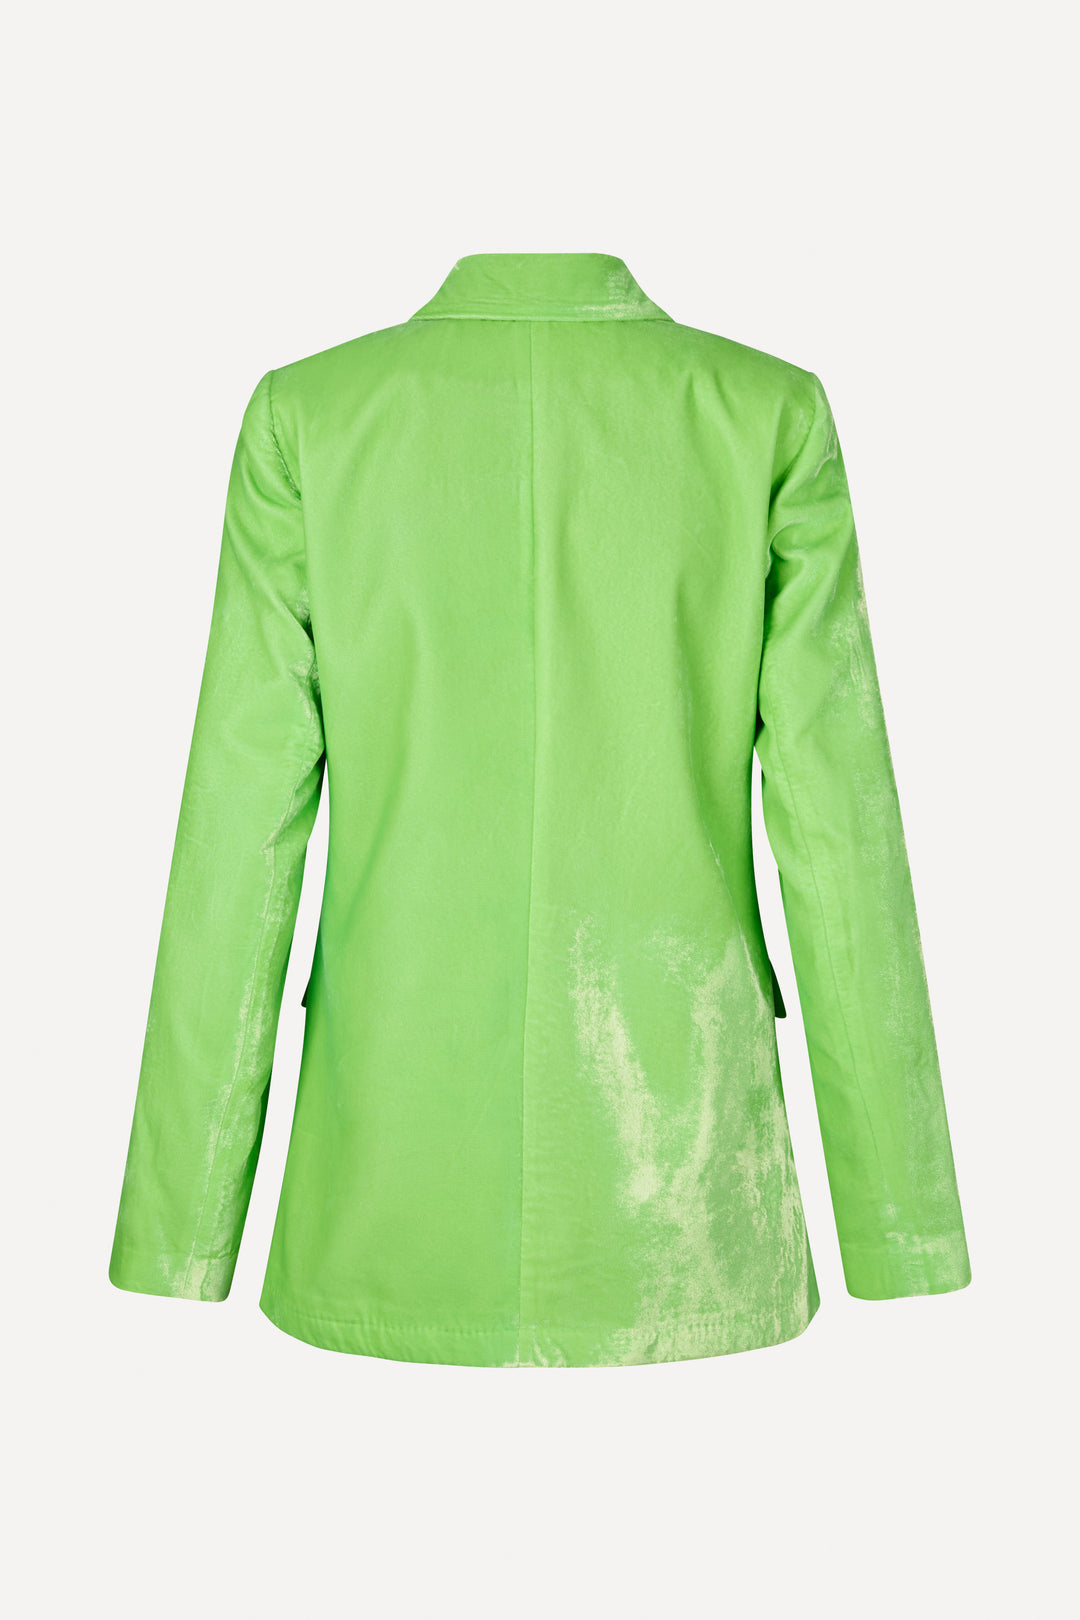 Stine Goya Archi Velvet Jacket - Neon Green